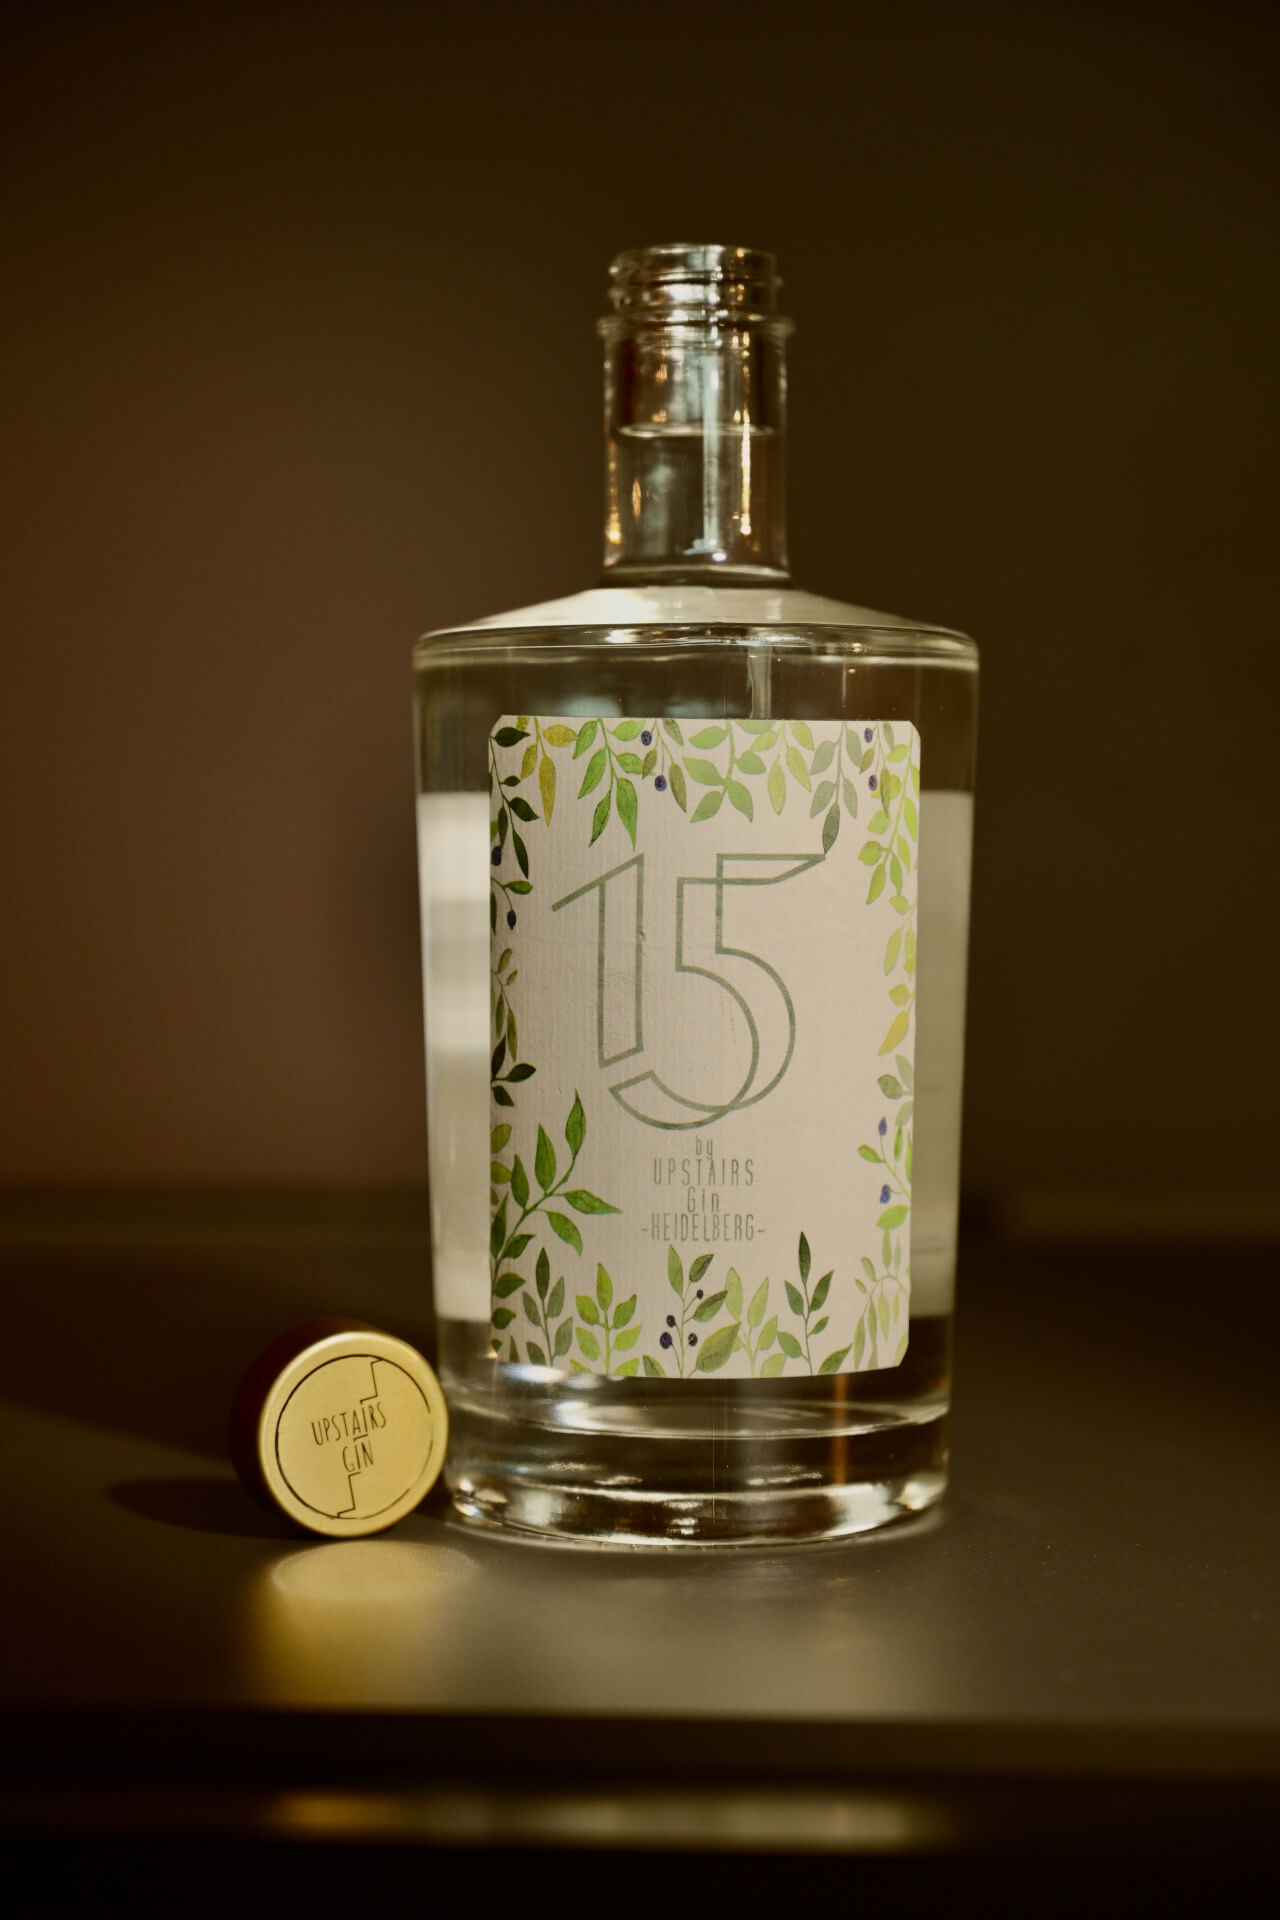 "15" Gin - hand-distilled by Upstairs Gin Heidelberg